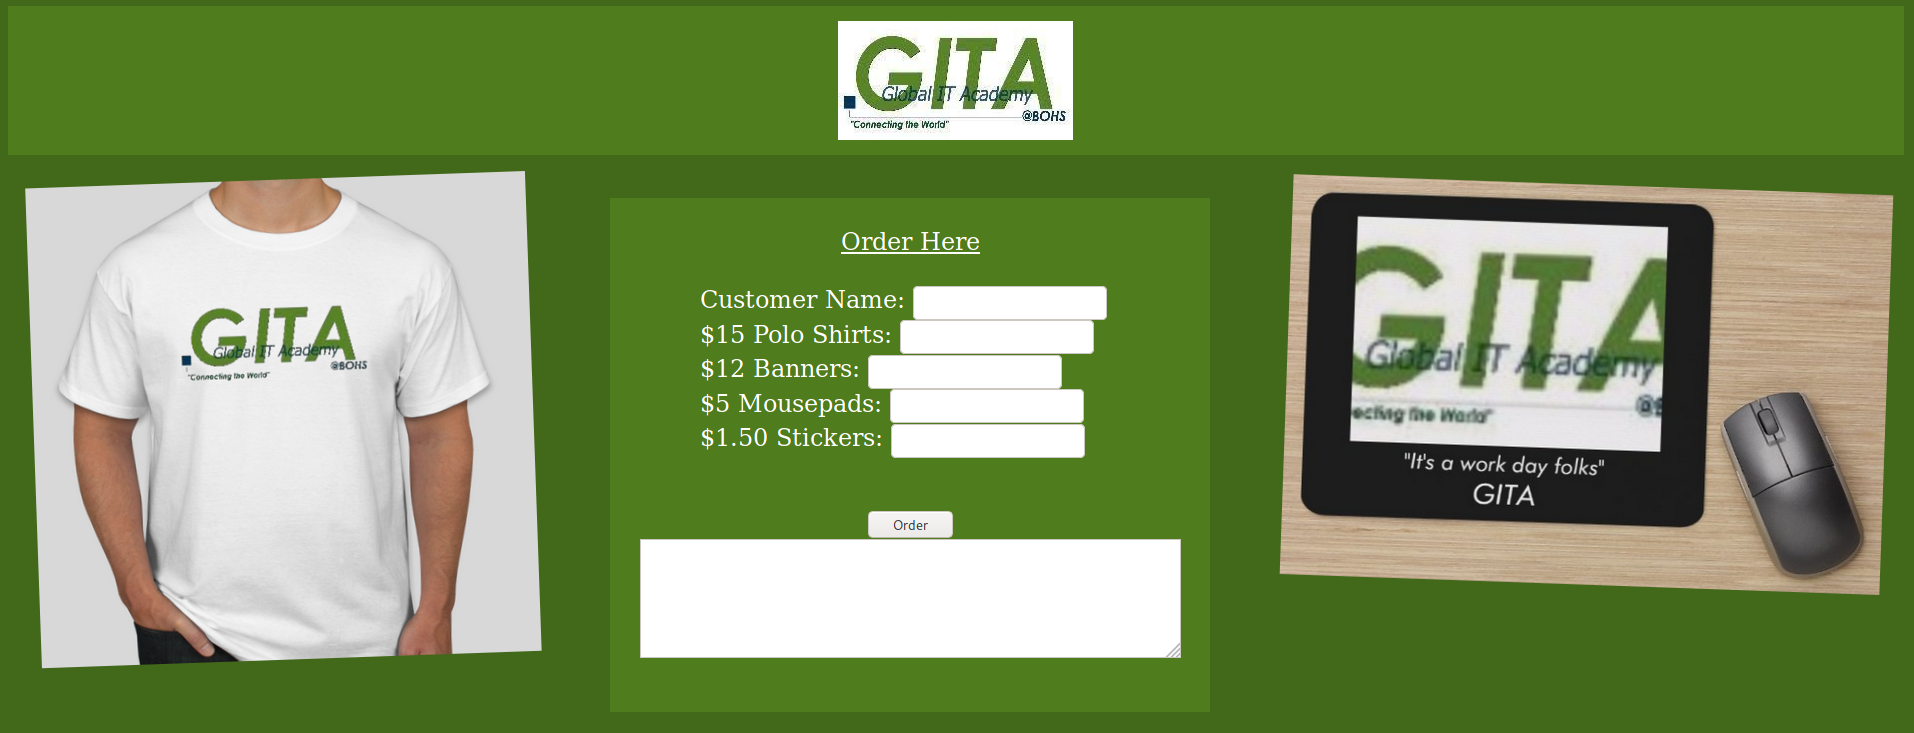 GITA Gear image has not loaded